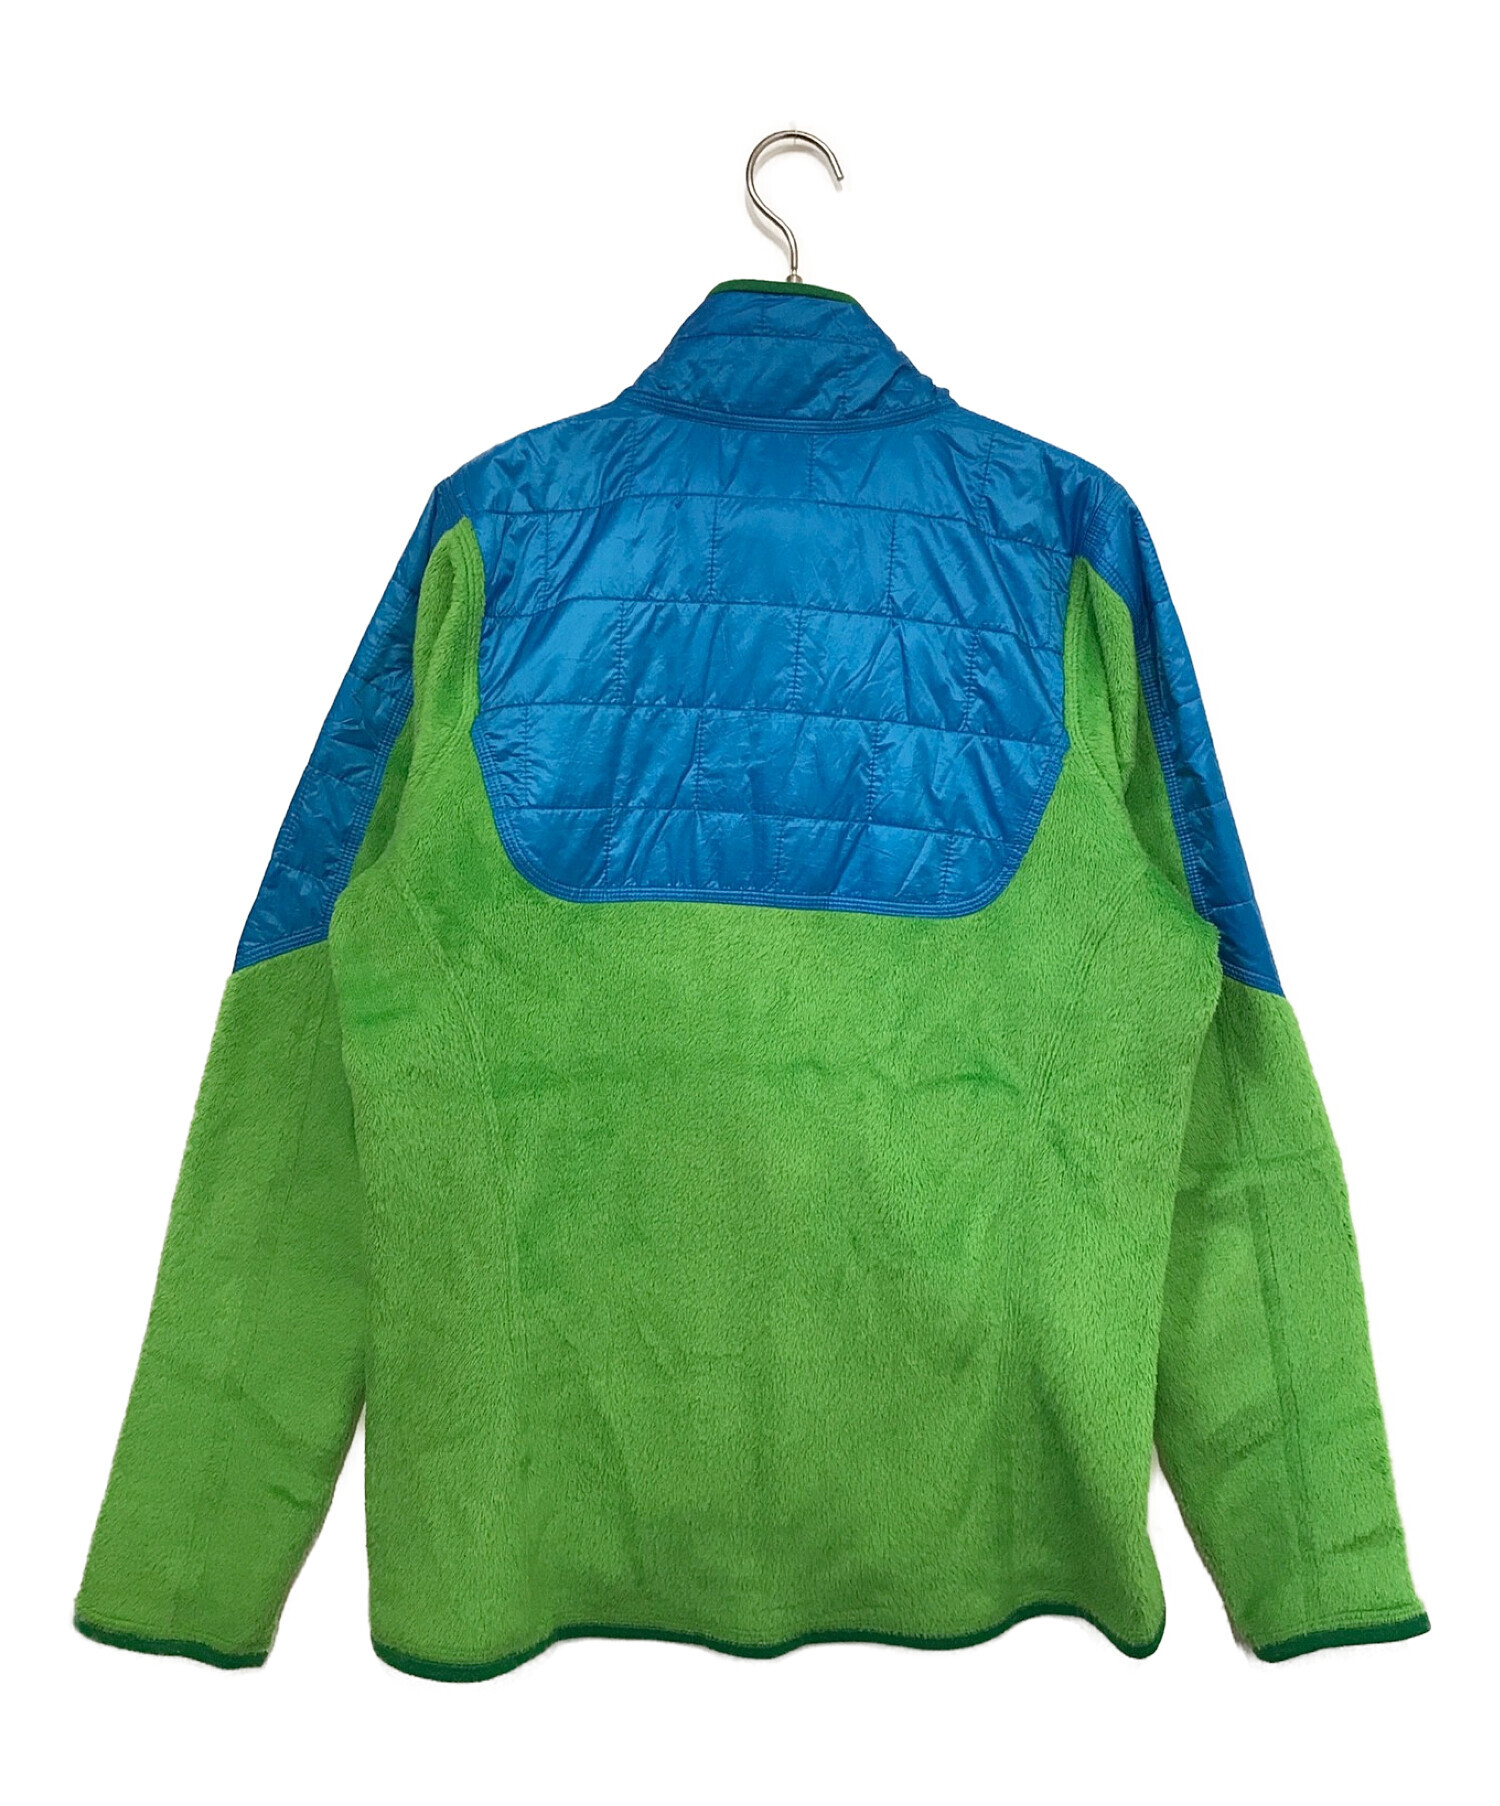 Patagonia (パタゴニア) ナノパフハイブリッドジャケット ブルー×グリーン サイズ:M